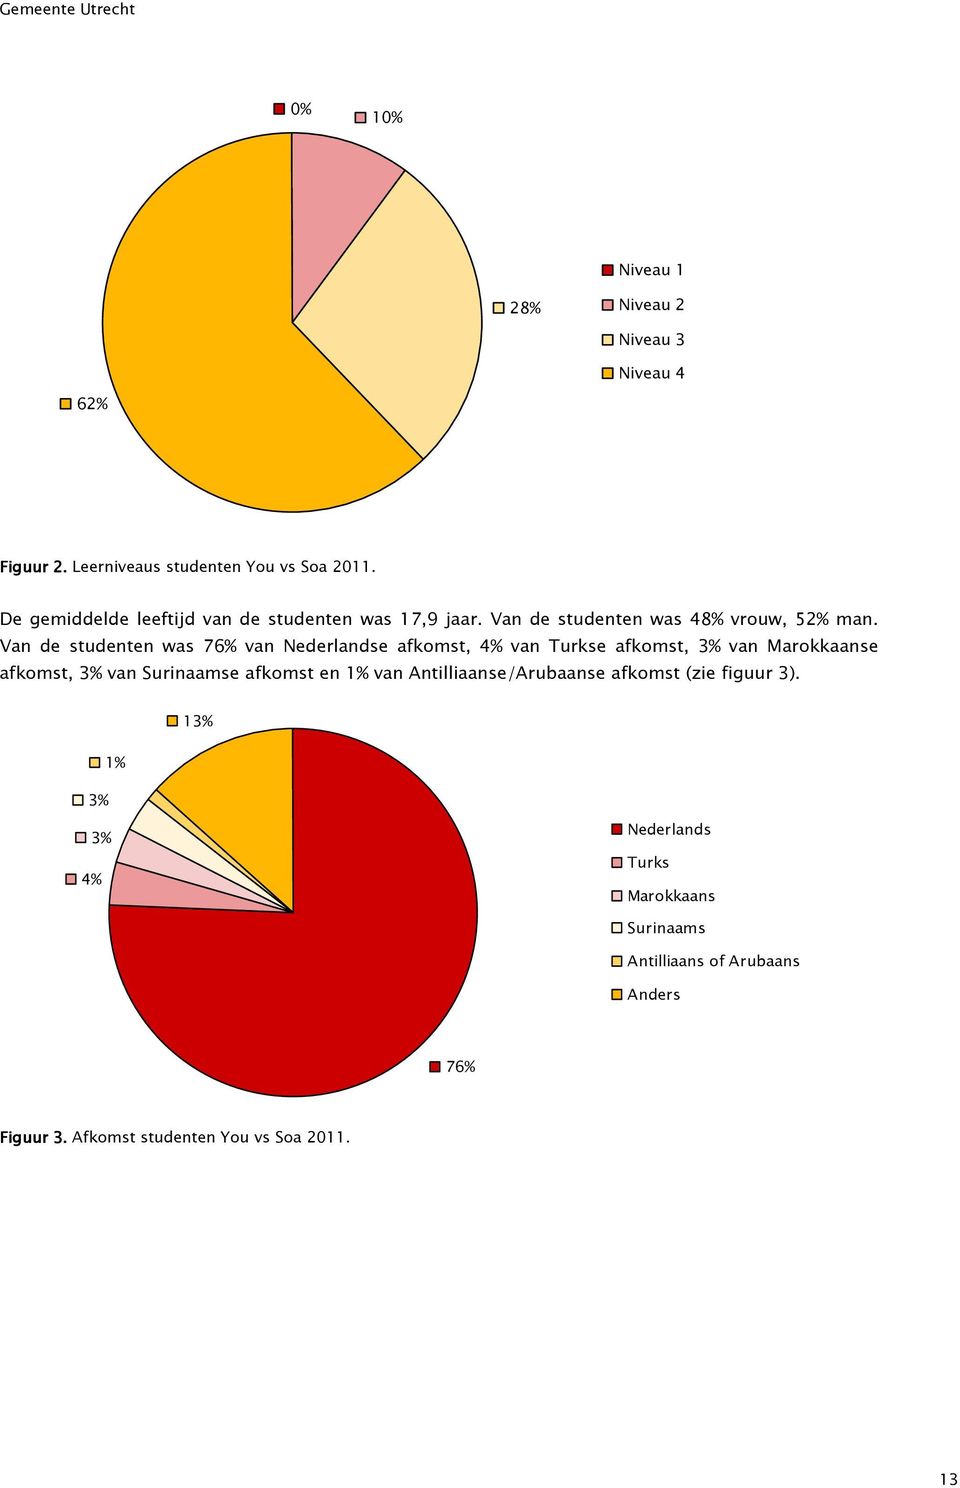 Van de studenten was 76% van Nederlandse afkomst, 4% van Turkse afkomst, 3% van Marokkaanse afkomst, 3% van Surinaamse afkomst